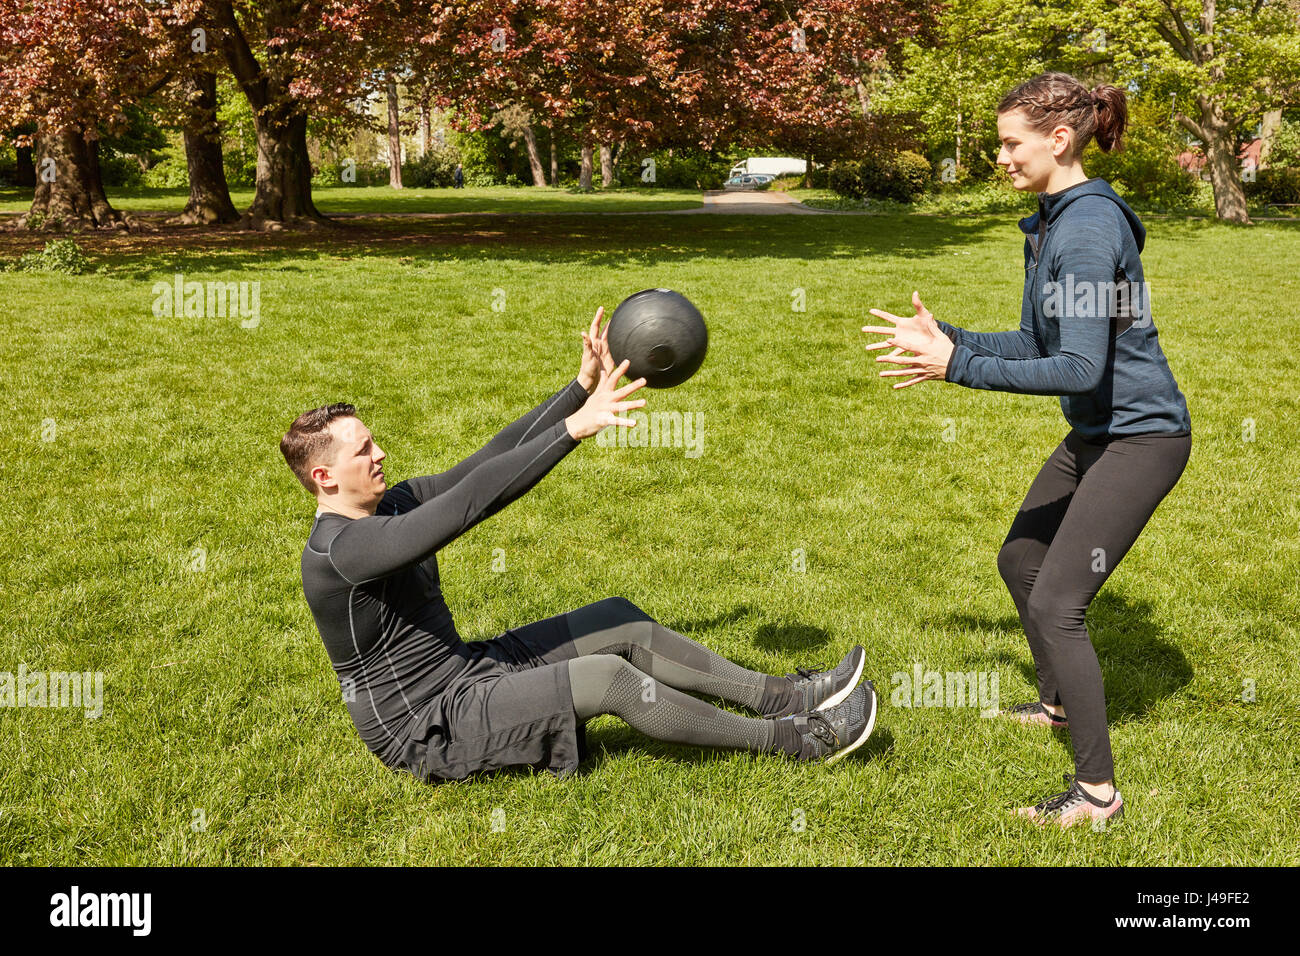 Mann wirft Fitnessball, Personal Trainer im park Stockfoto